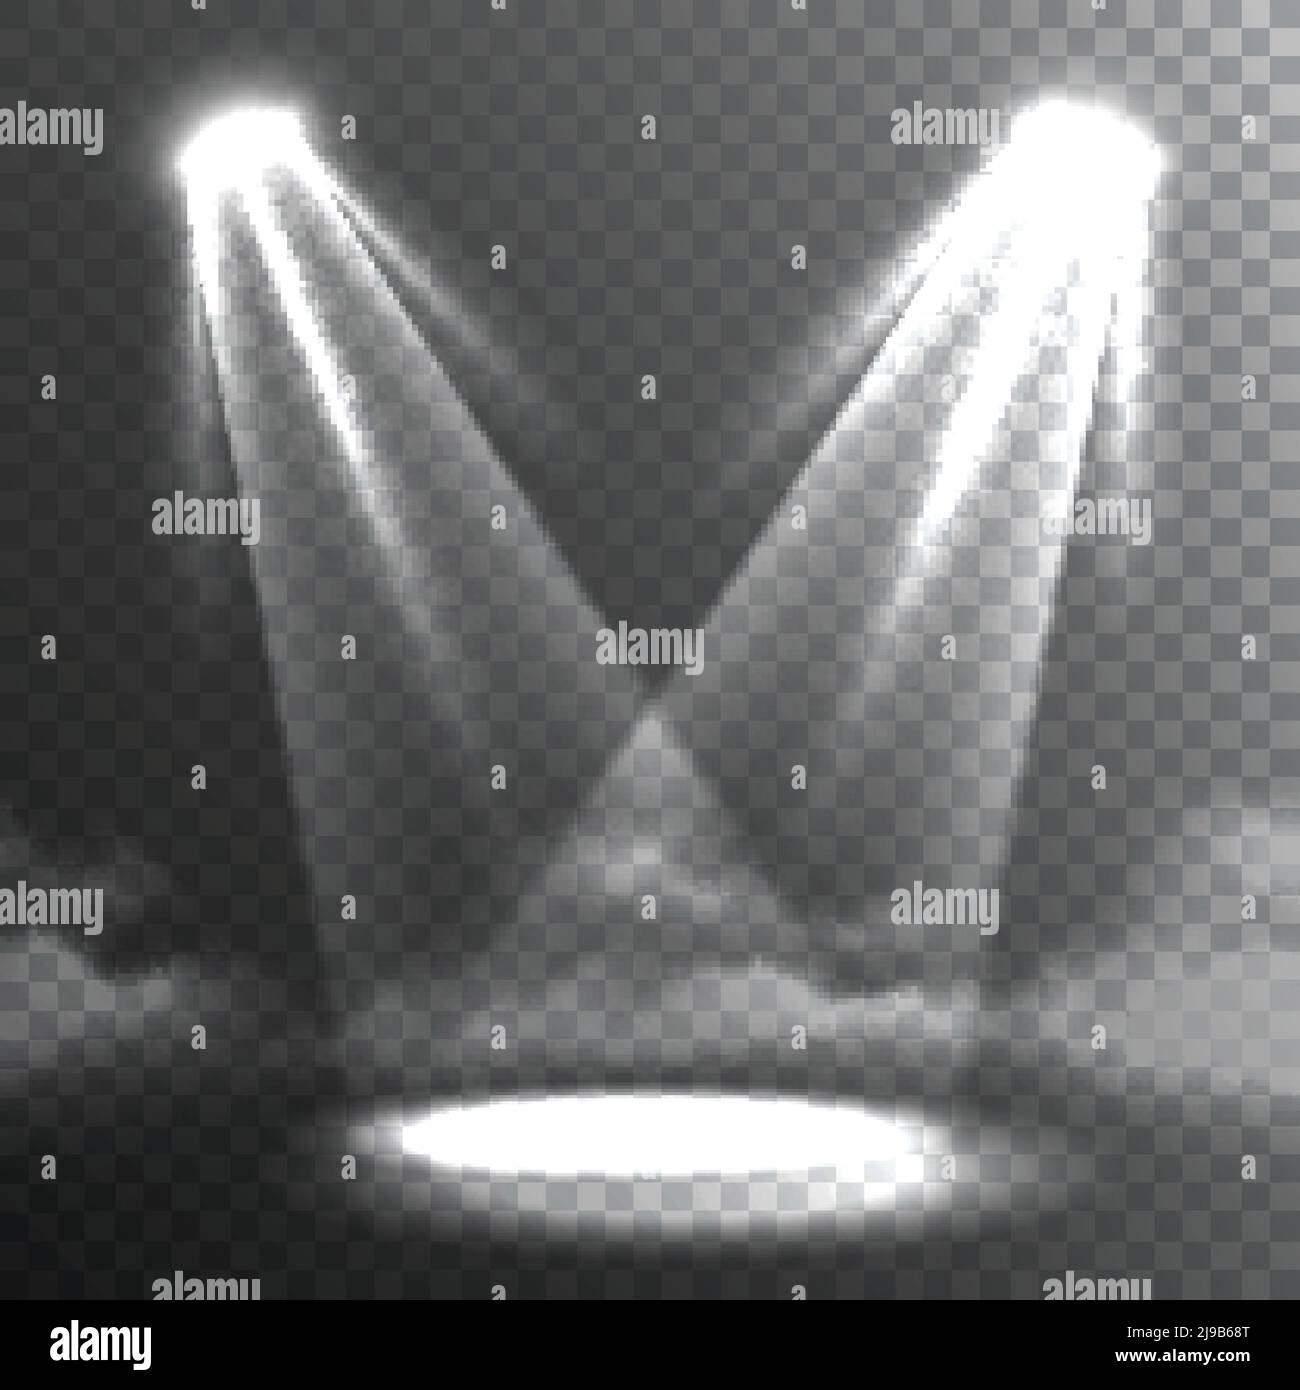 Deux faisceaux de lumière blancs se rejoignent sur le spot lumineux du sol illustration vectorielle abstraite de la bannière en arrière-plan sombre Illustration de Vecteur